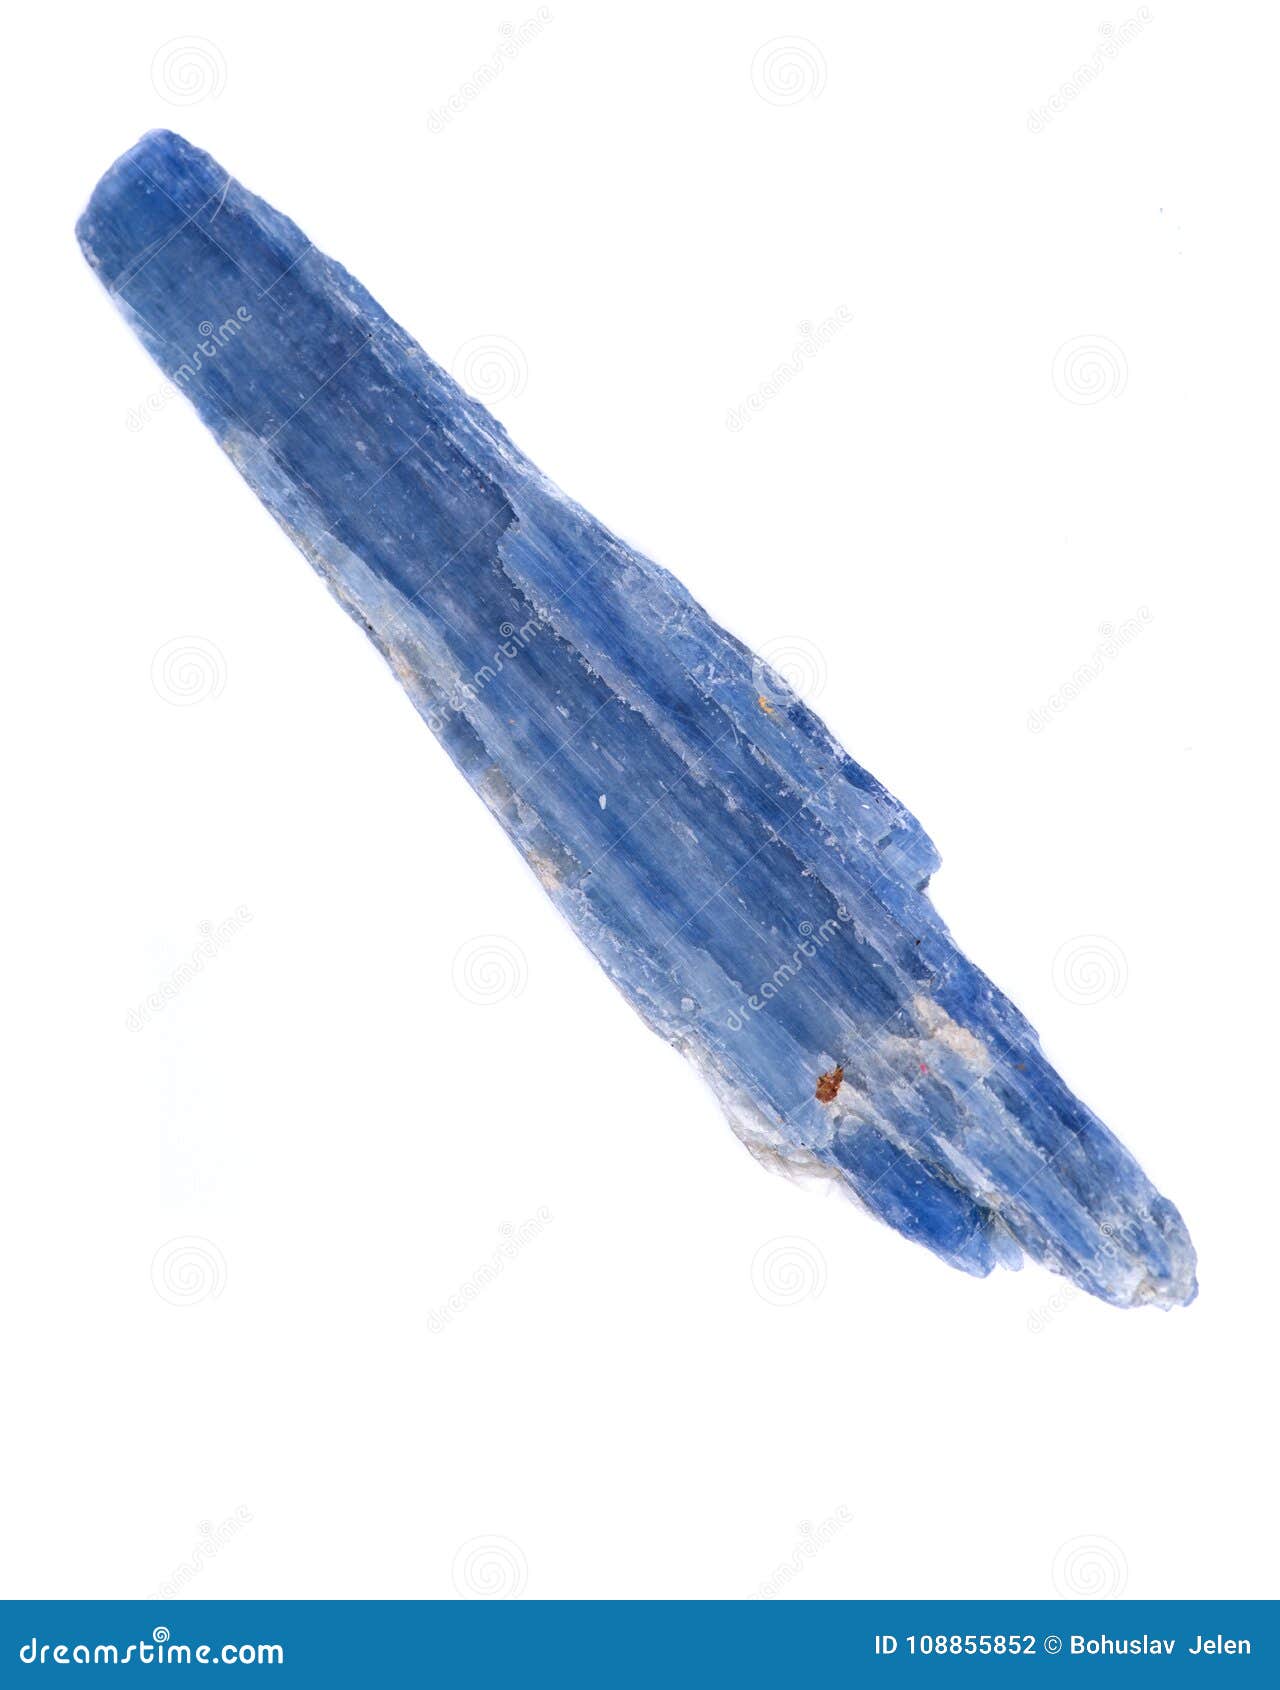 半透明的从巴西的宝石质量蓝色蓝晶石刀片库存照片 图片包括有半透明的从巴西的宝石质量蓝色蓝晶石刀片